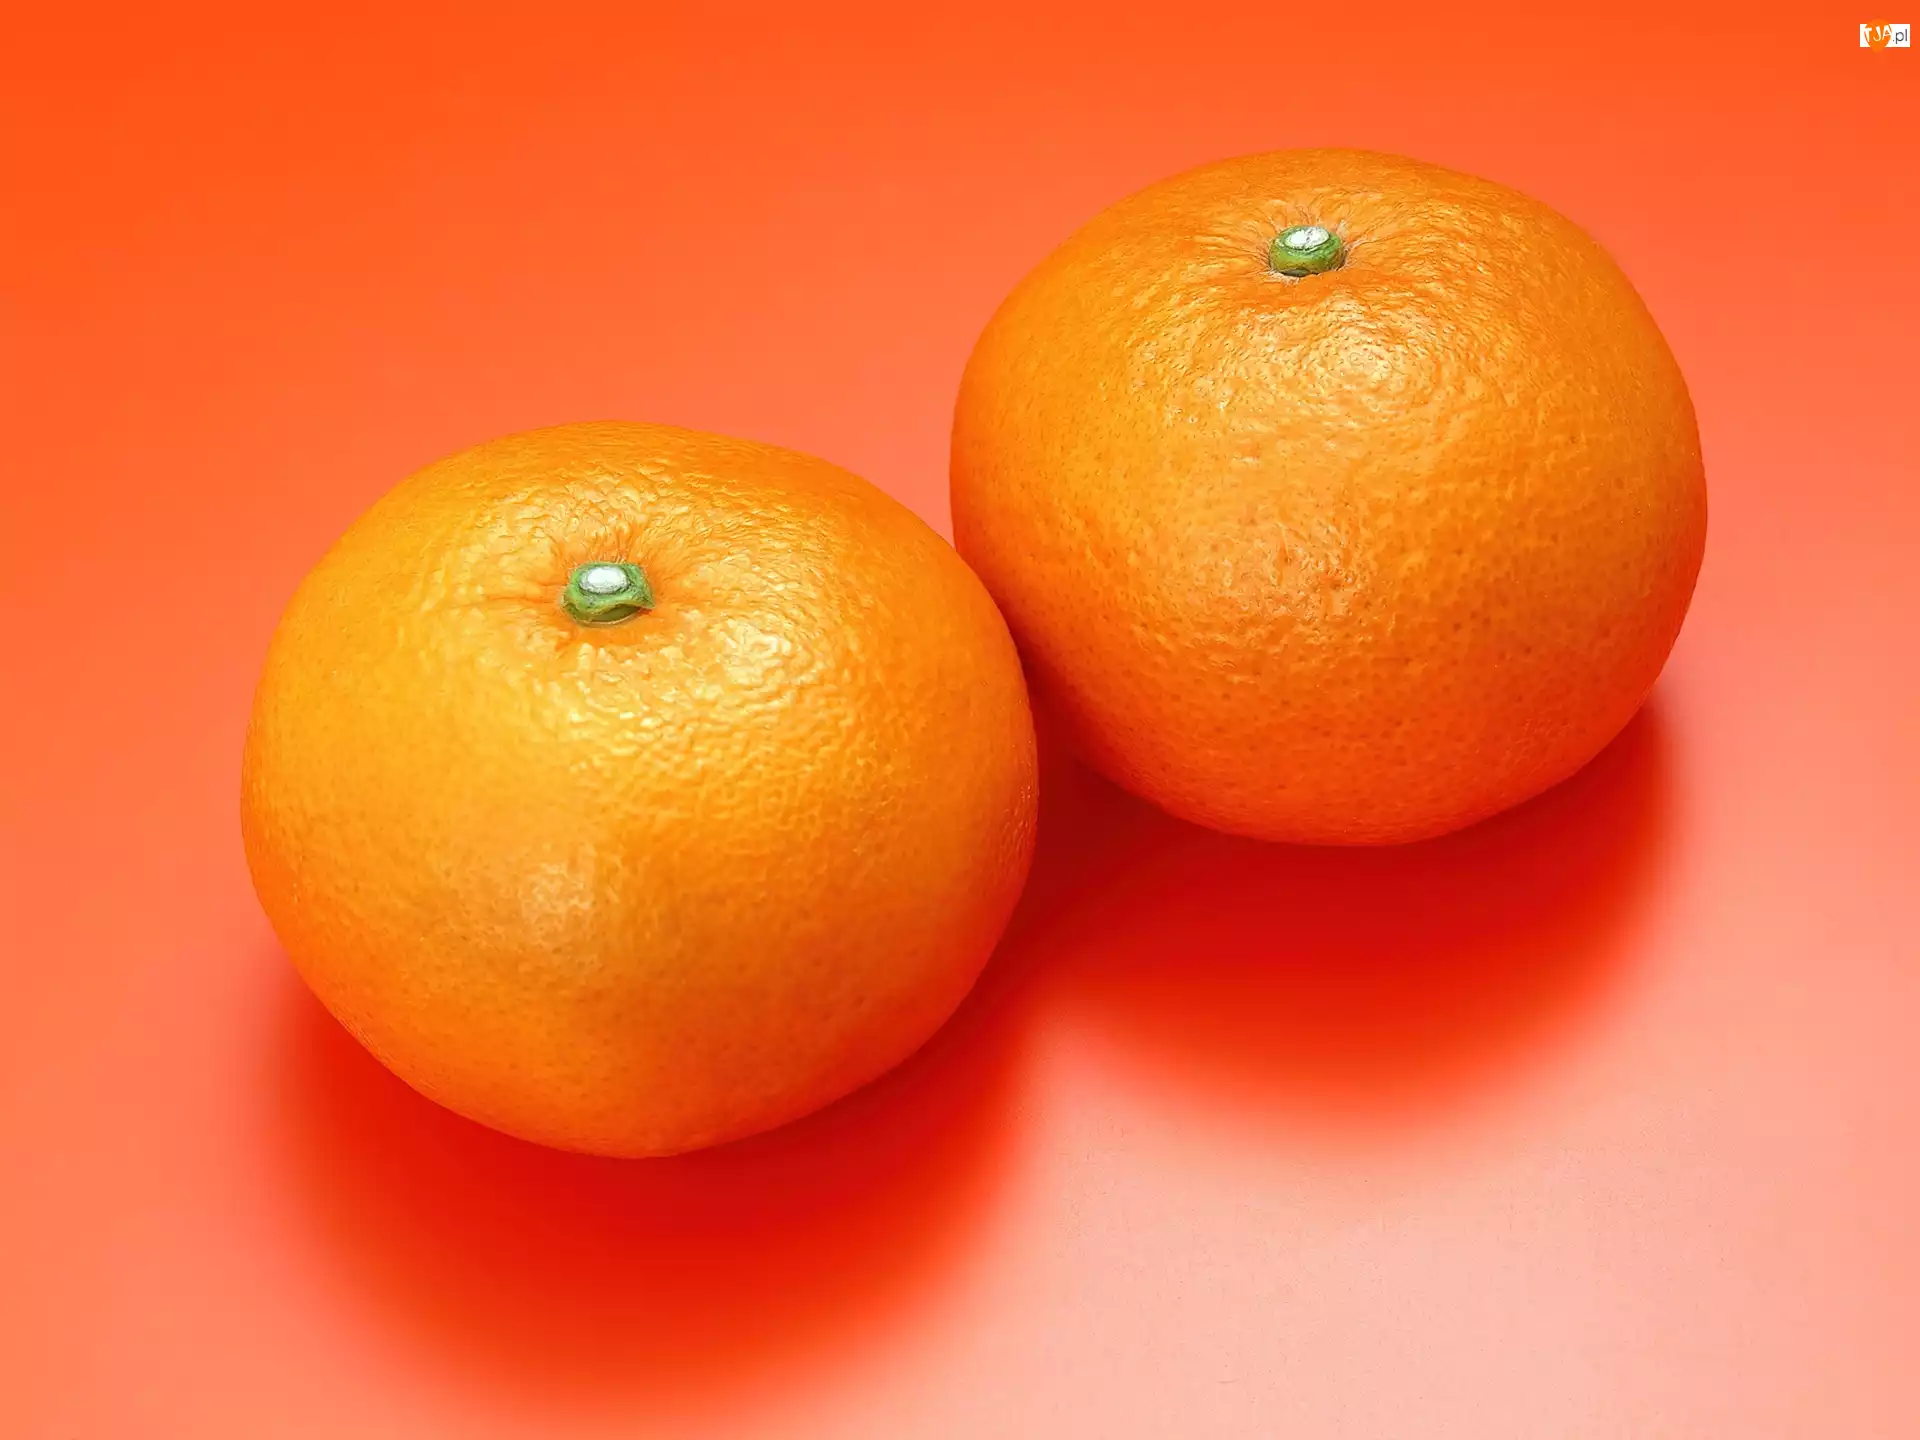 Pomarańcze, Dwie